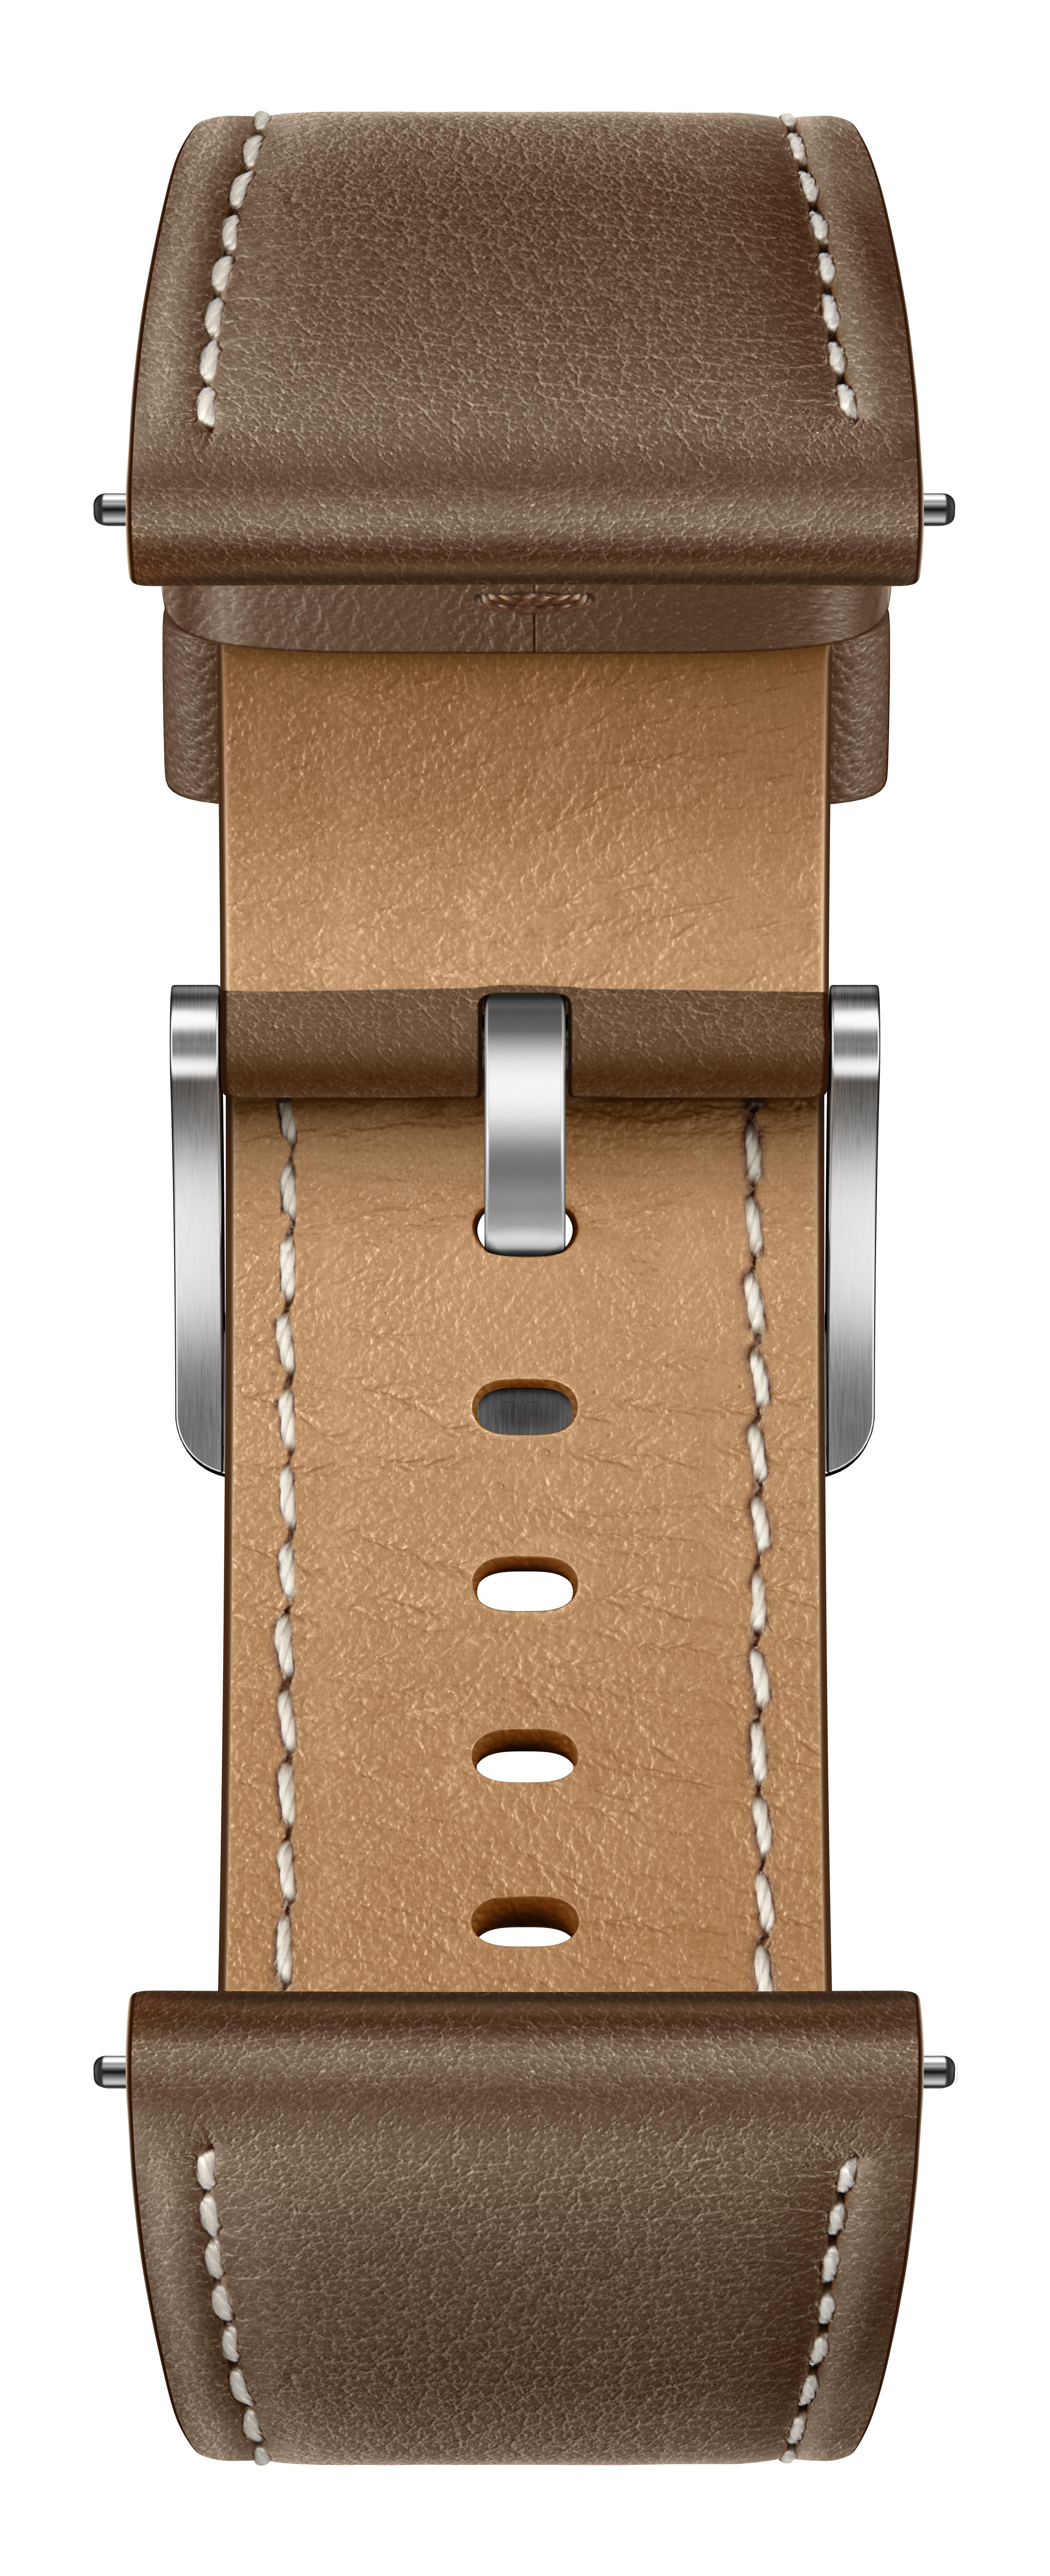 HUAWEI WATCH GT 140 Steel/Brown - 210 46mm Smartwatch Echtleder, Stainless mm, Leather Edelstahl 3